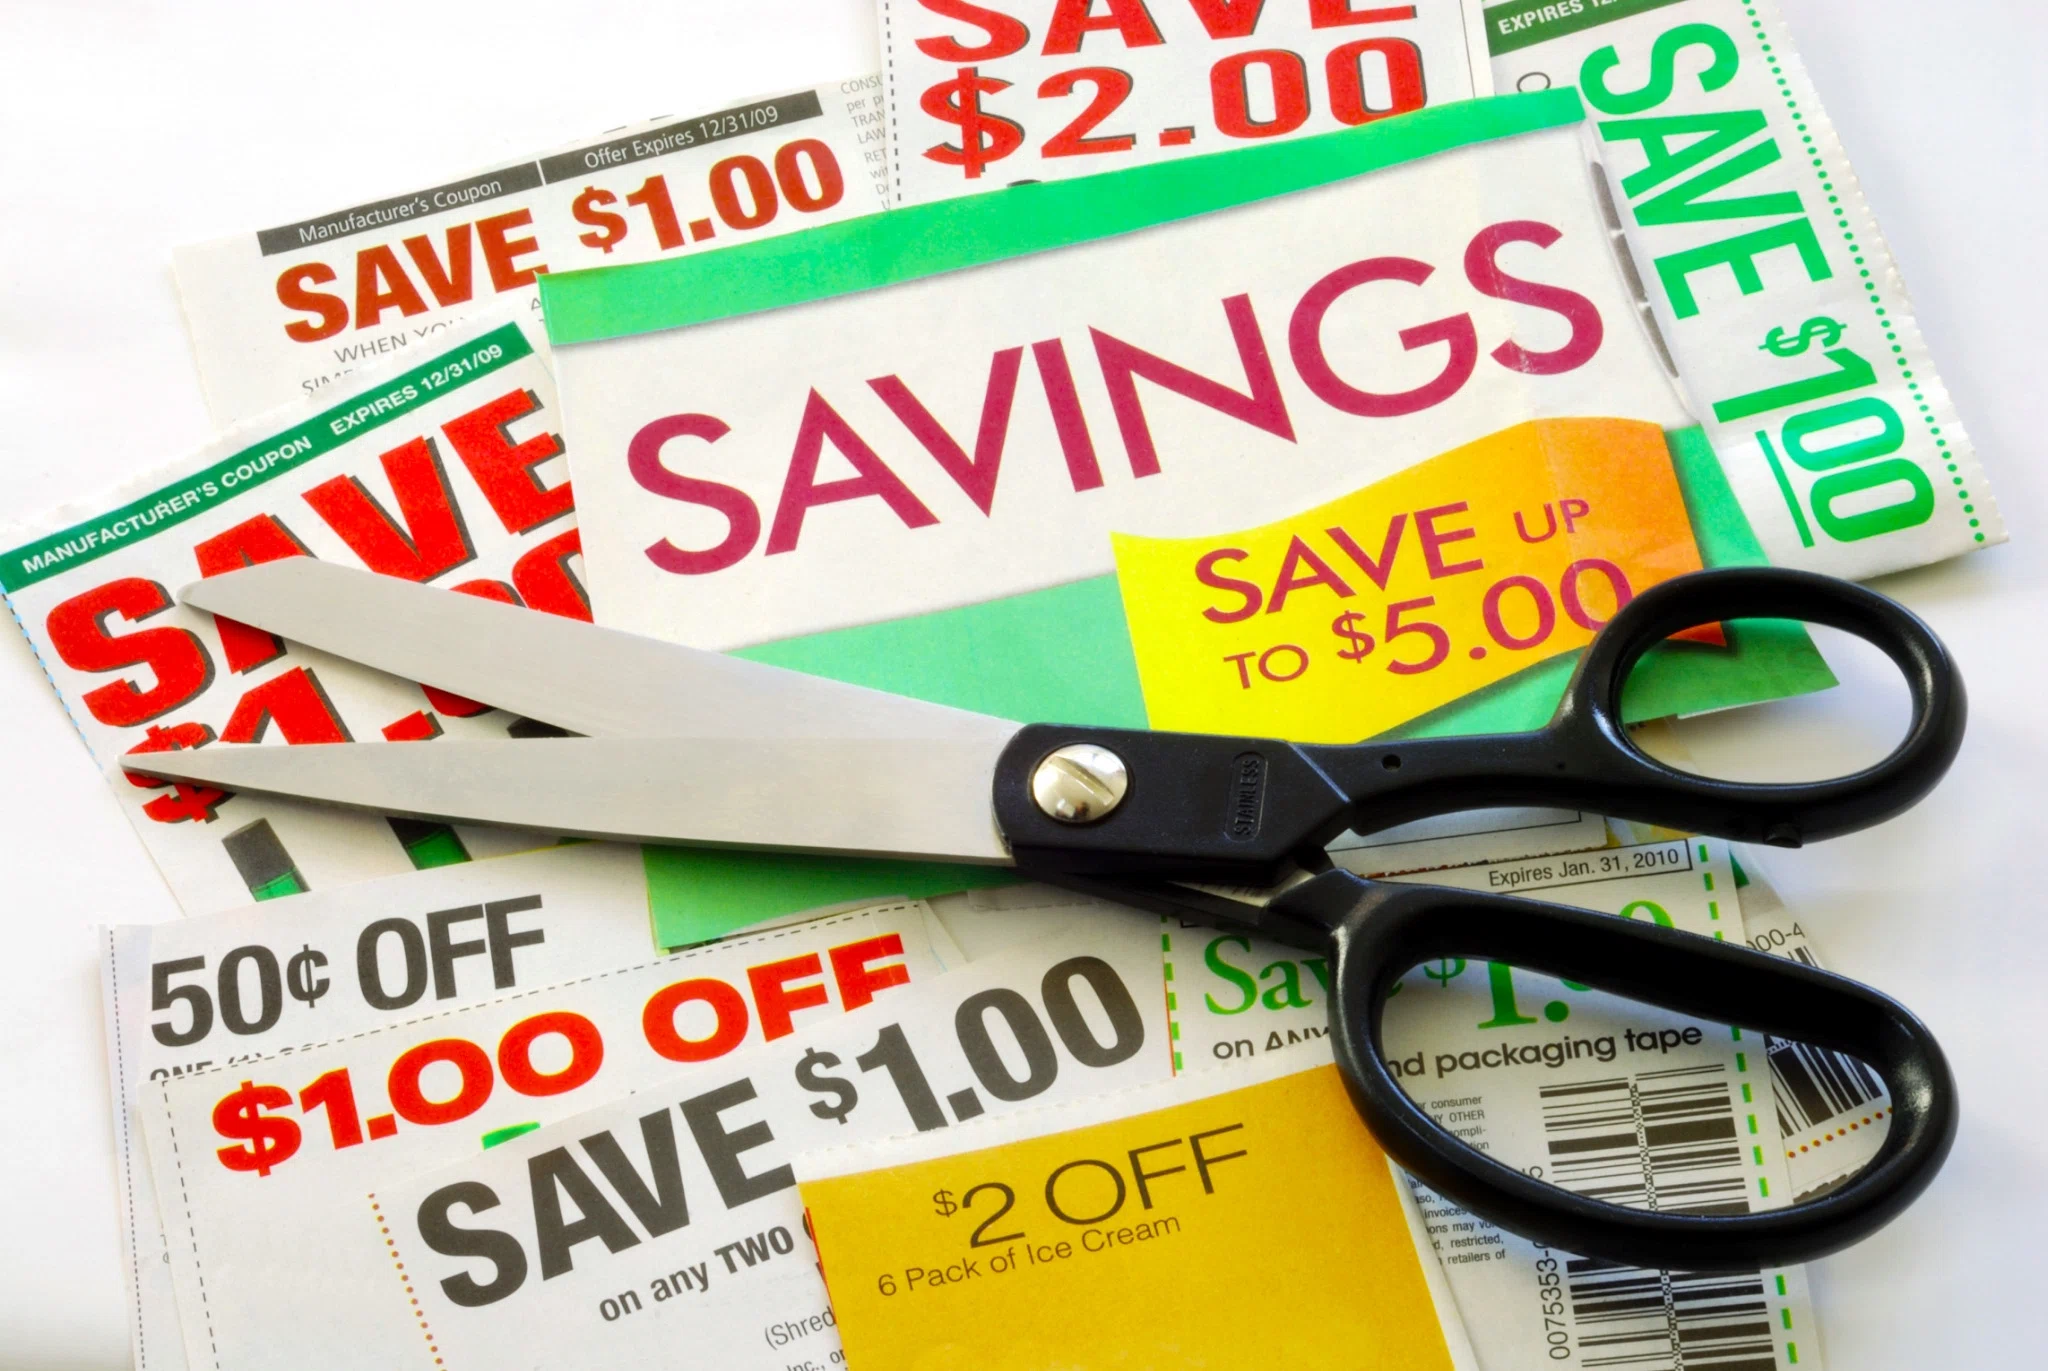 couponing-at-bealls-how-to-save-at-bealls-using-coupons-sales